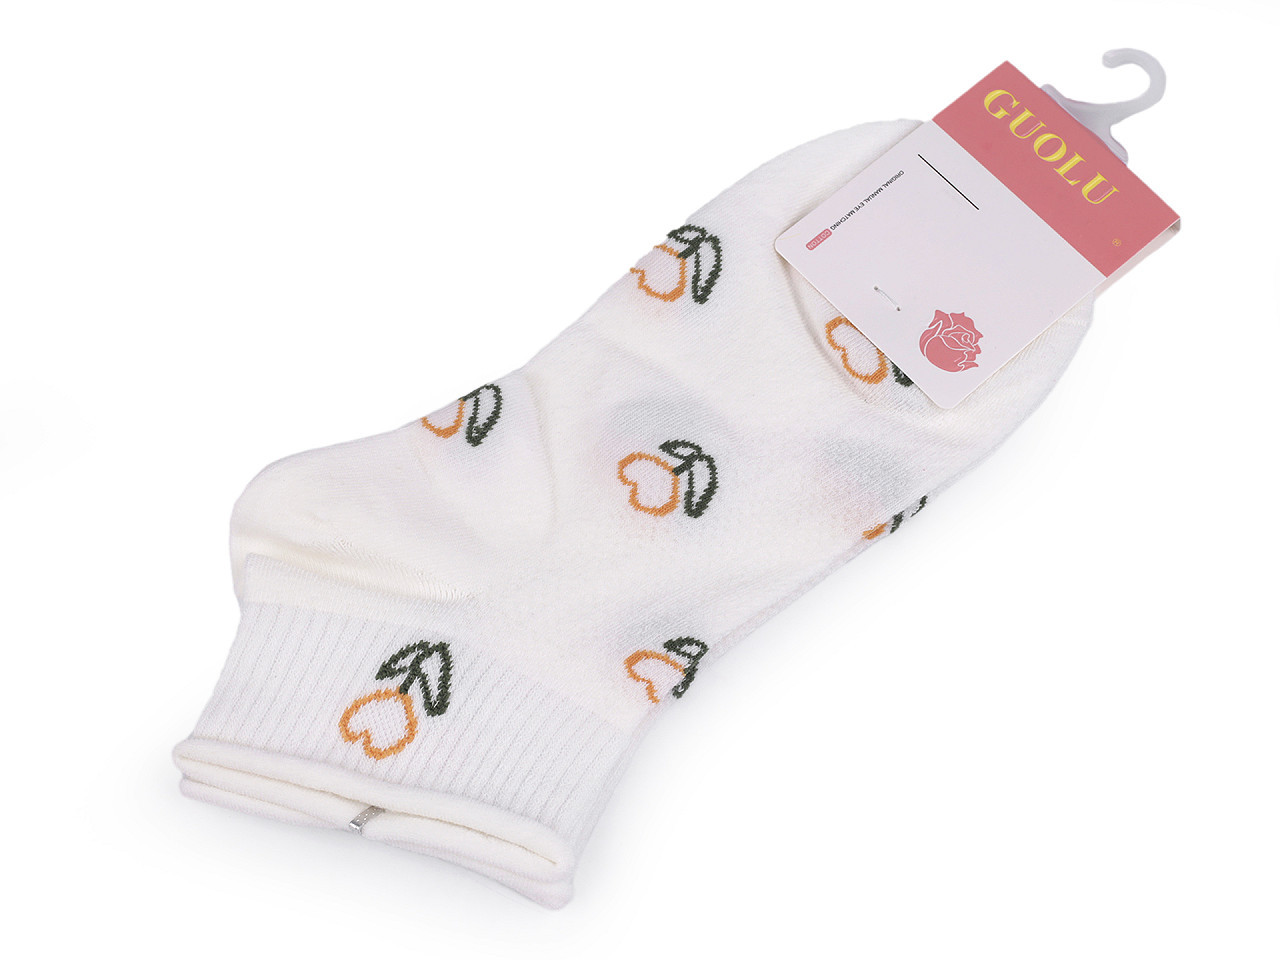 Dámské / dívčí bavlněné ponožky kotníkové, barva 6 bílá